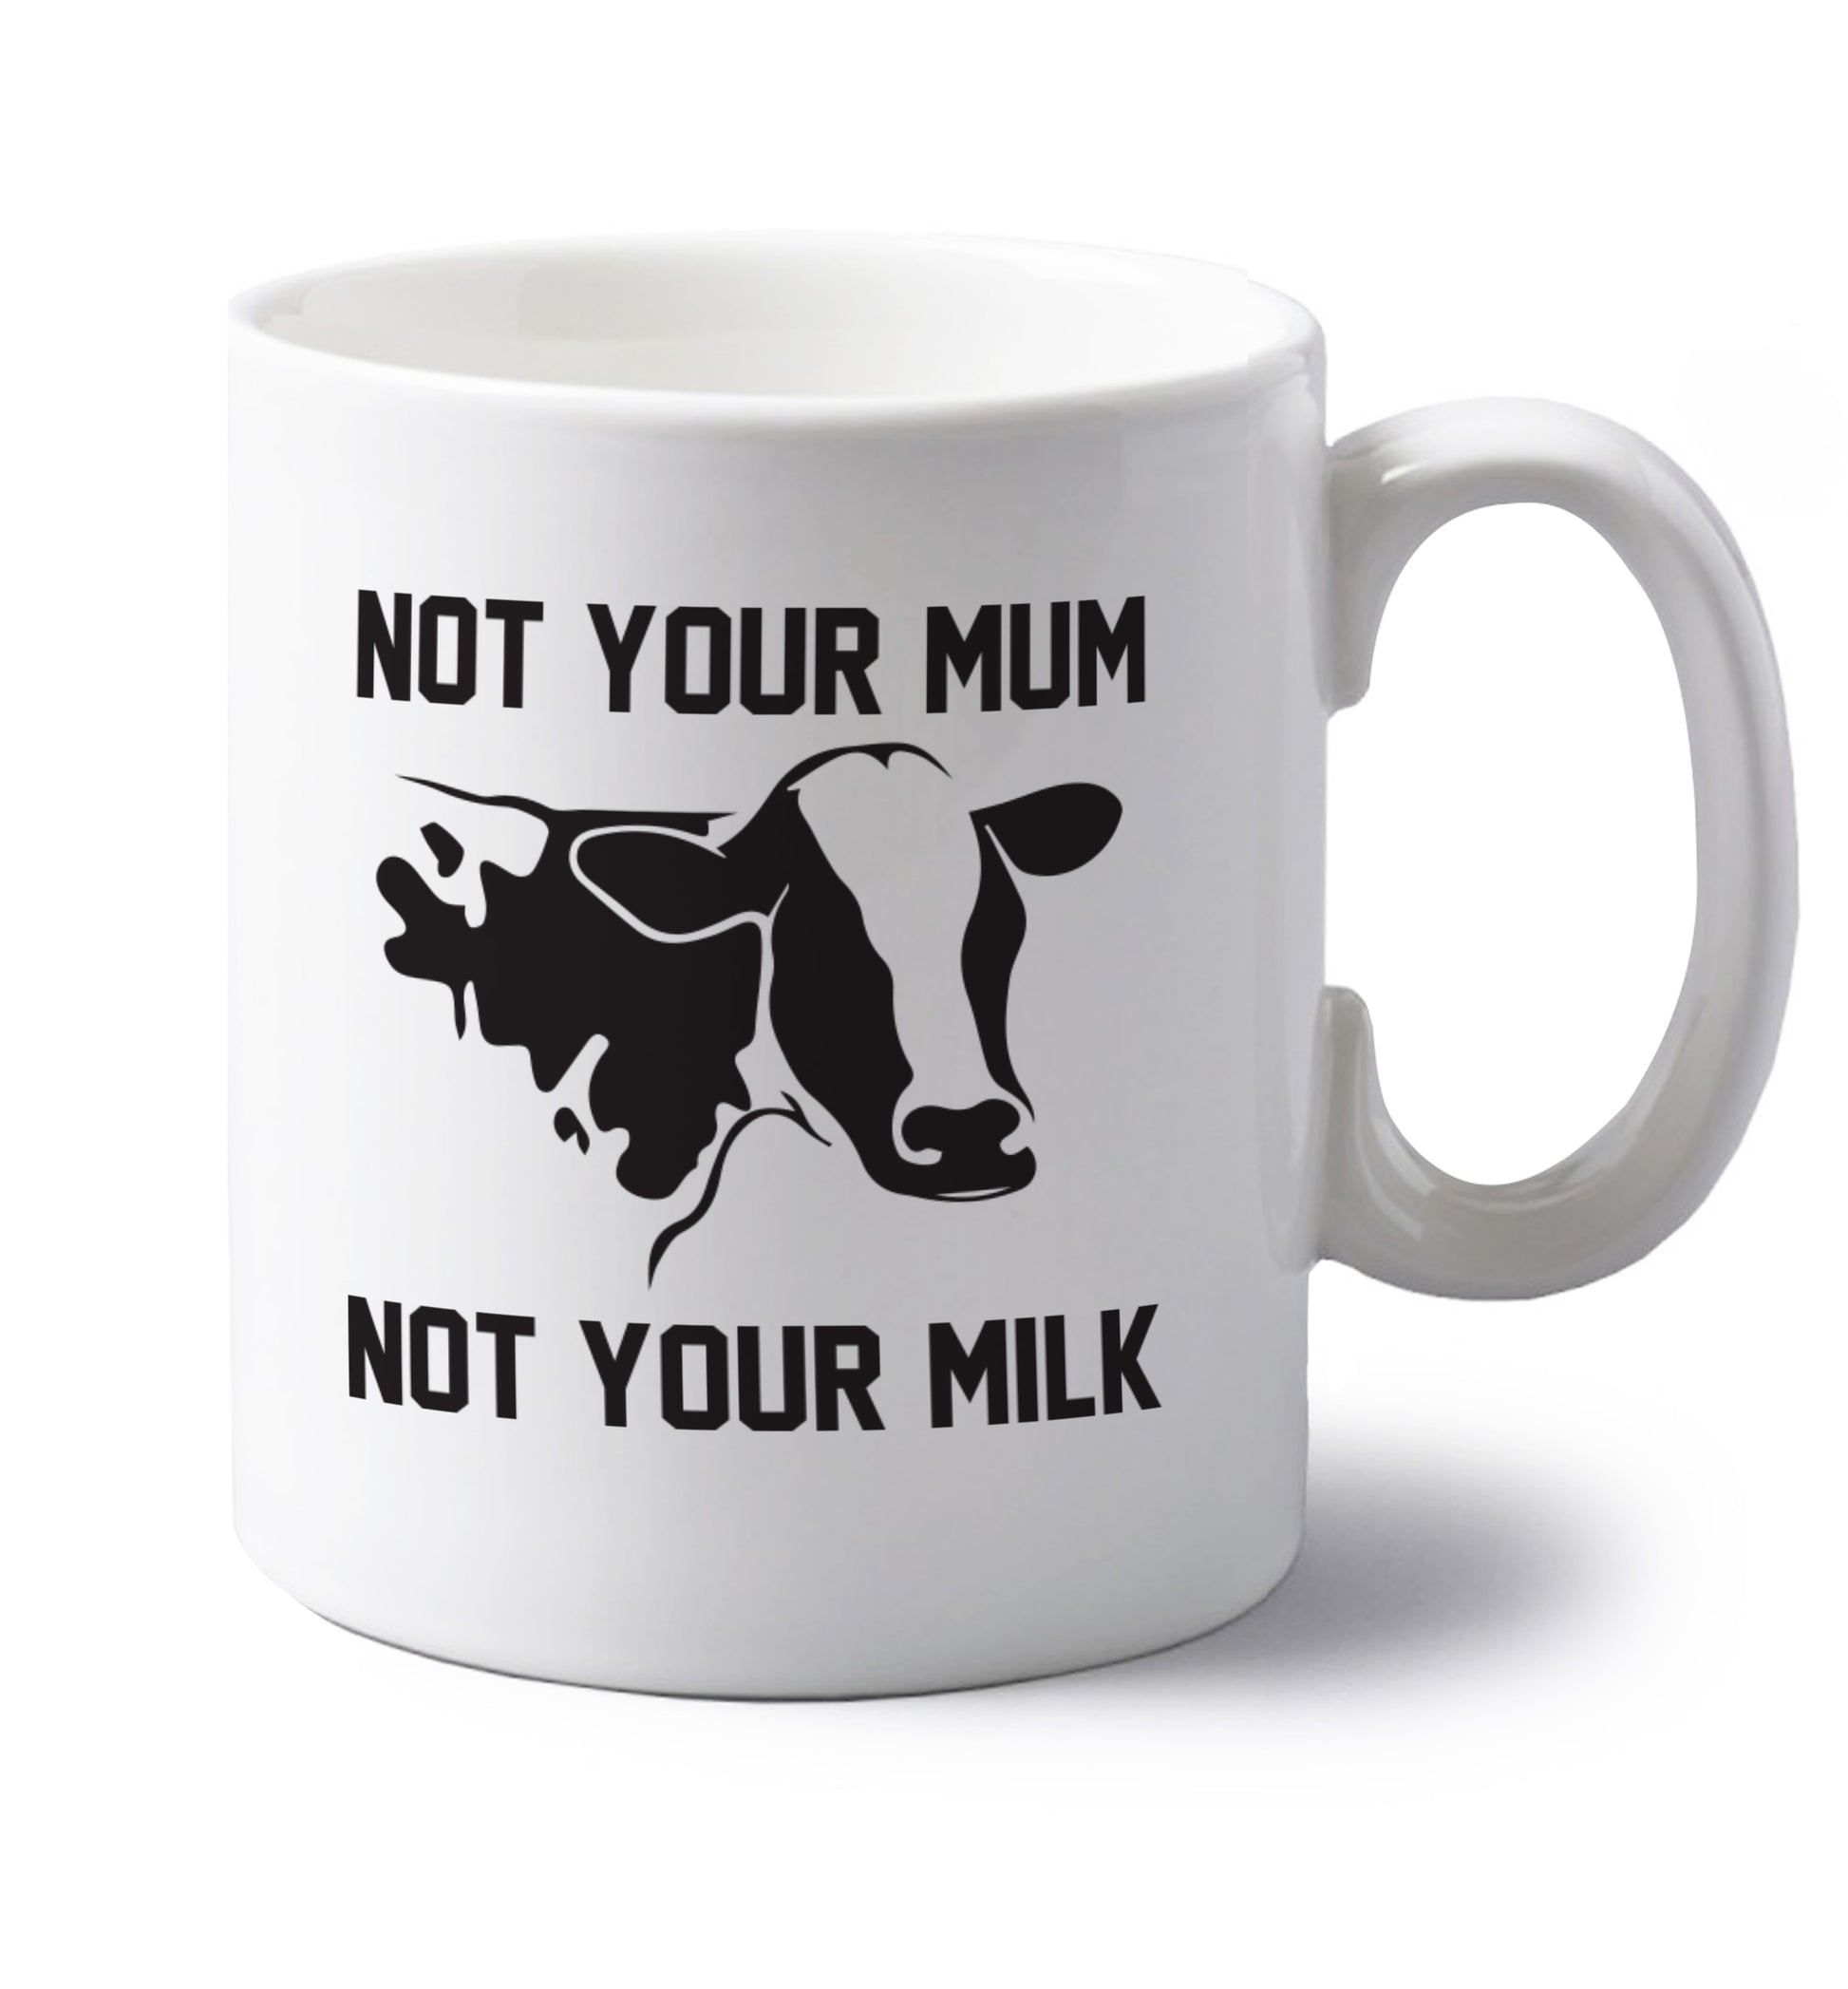 Not your mum not your milk left handed white ceramic mug 